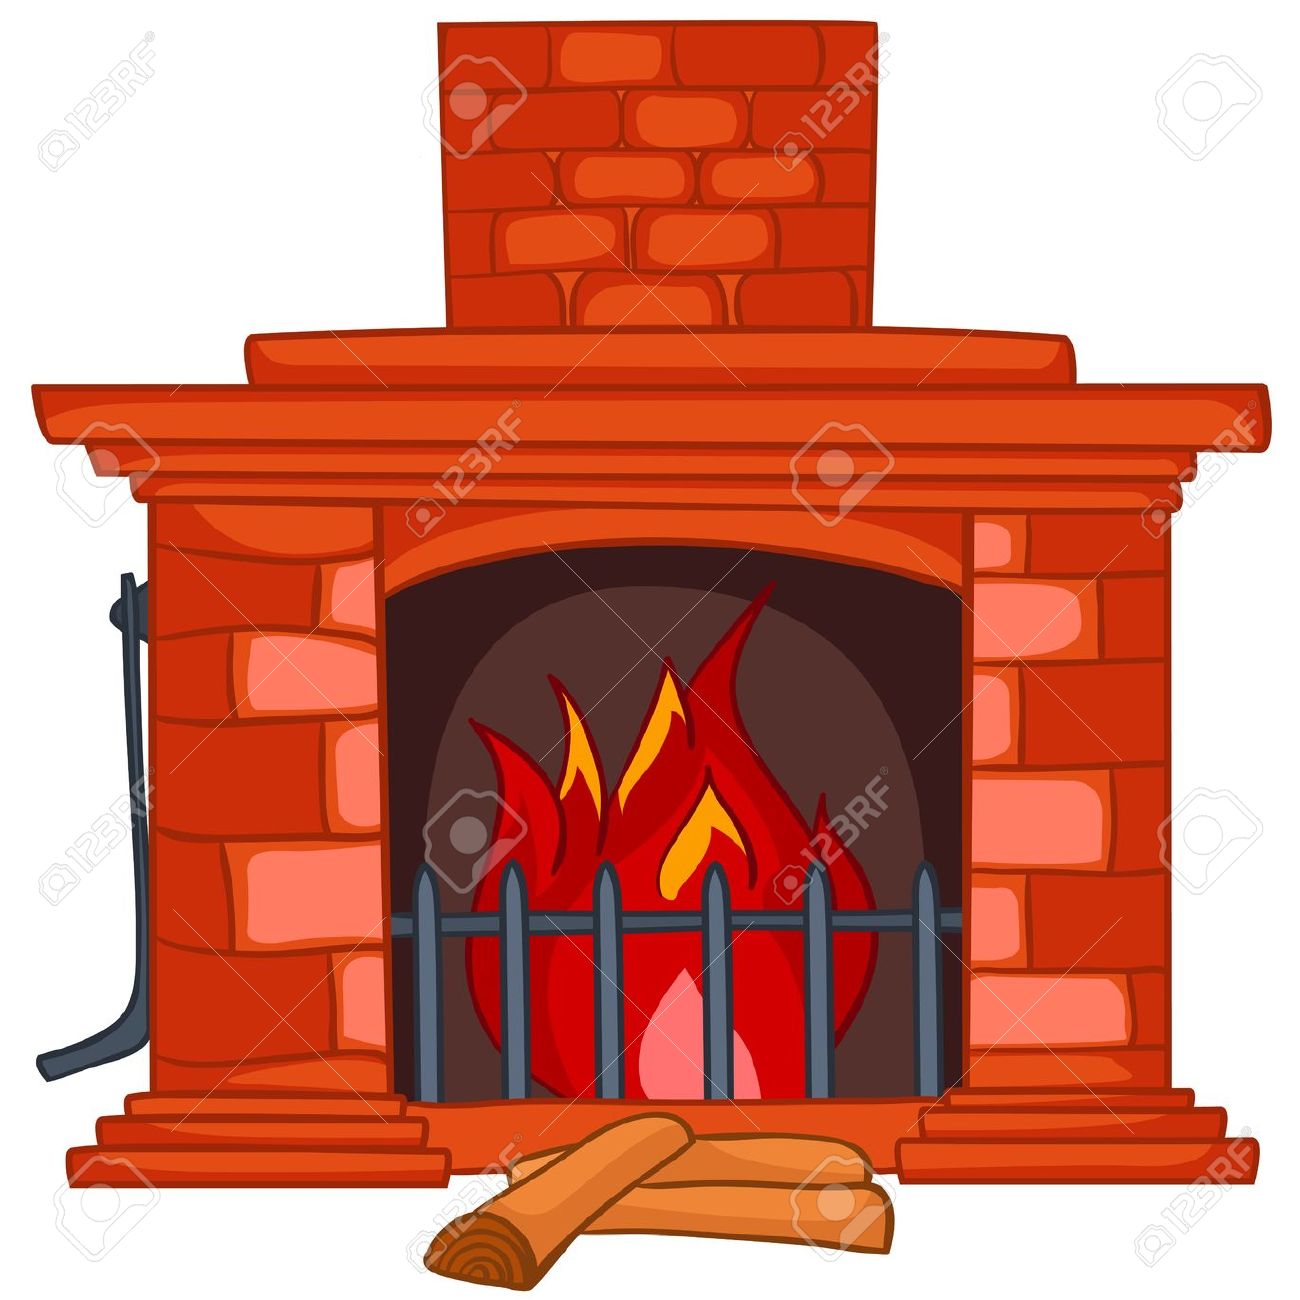 Clipart Fireplace - clipartal - Fireplace Clip Art